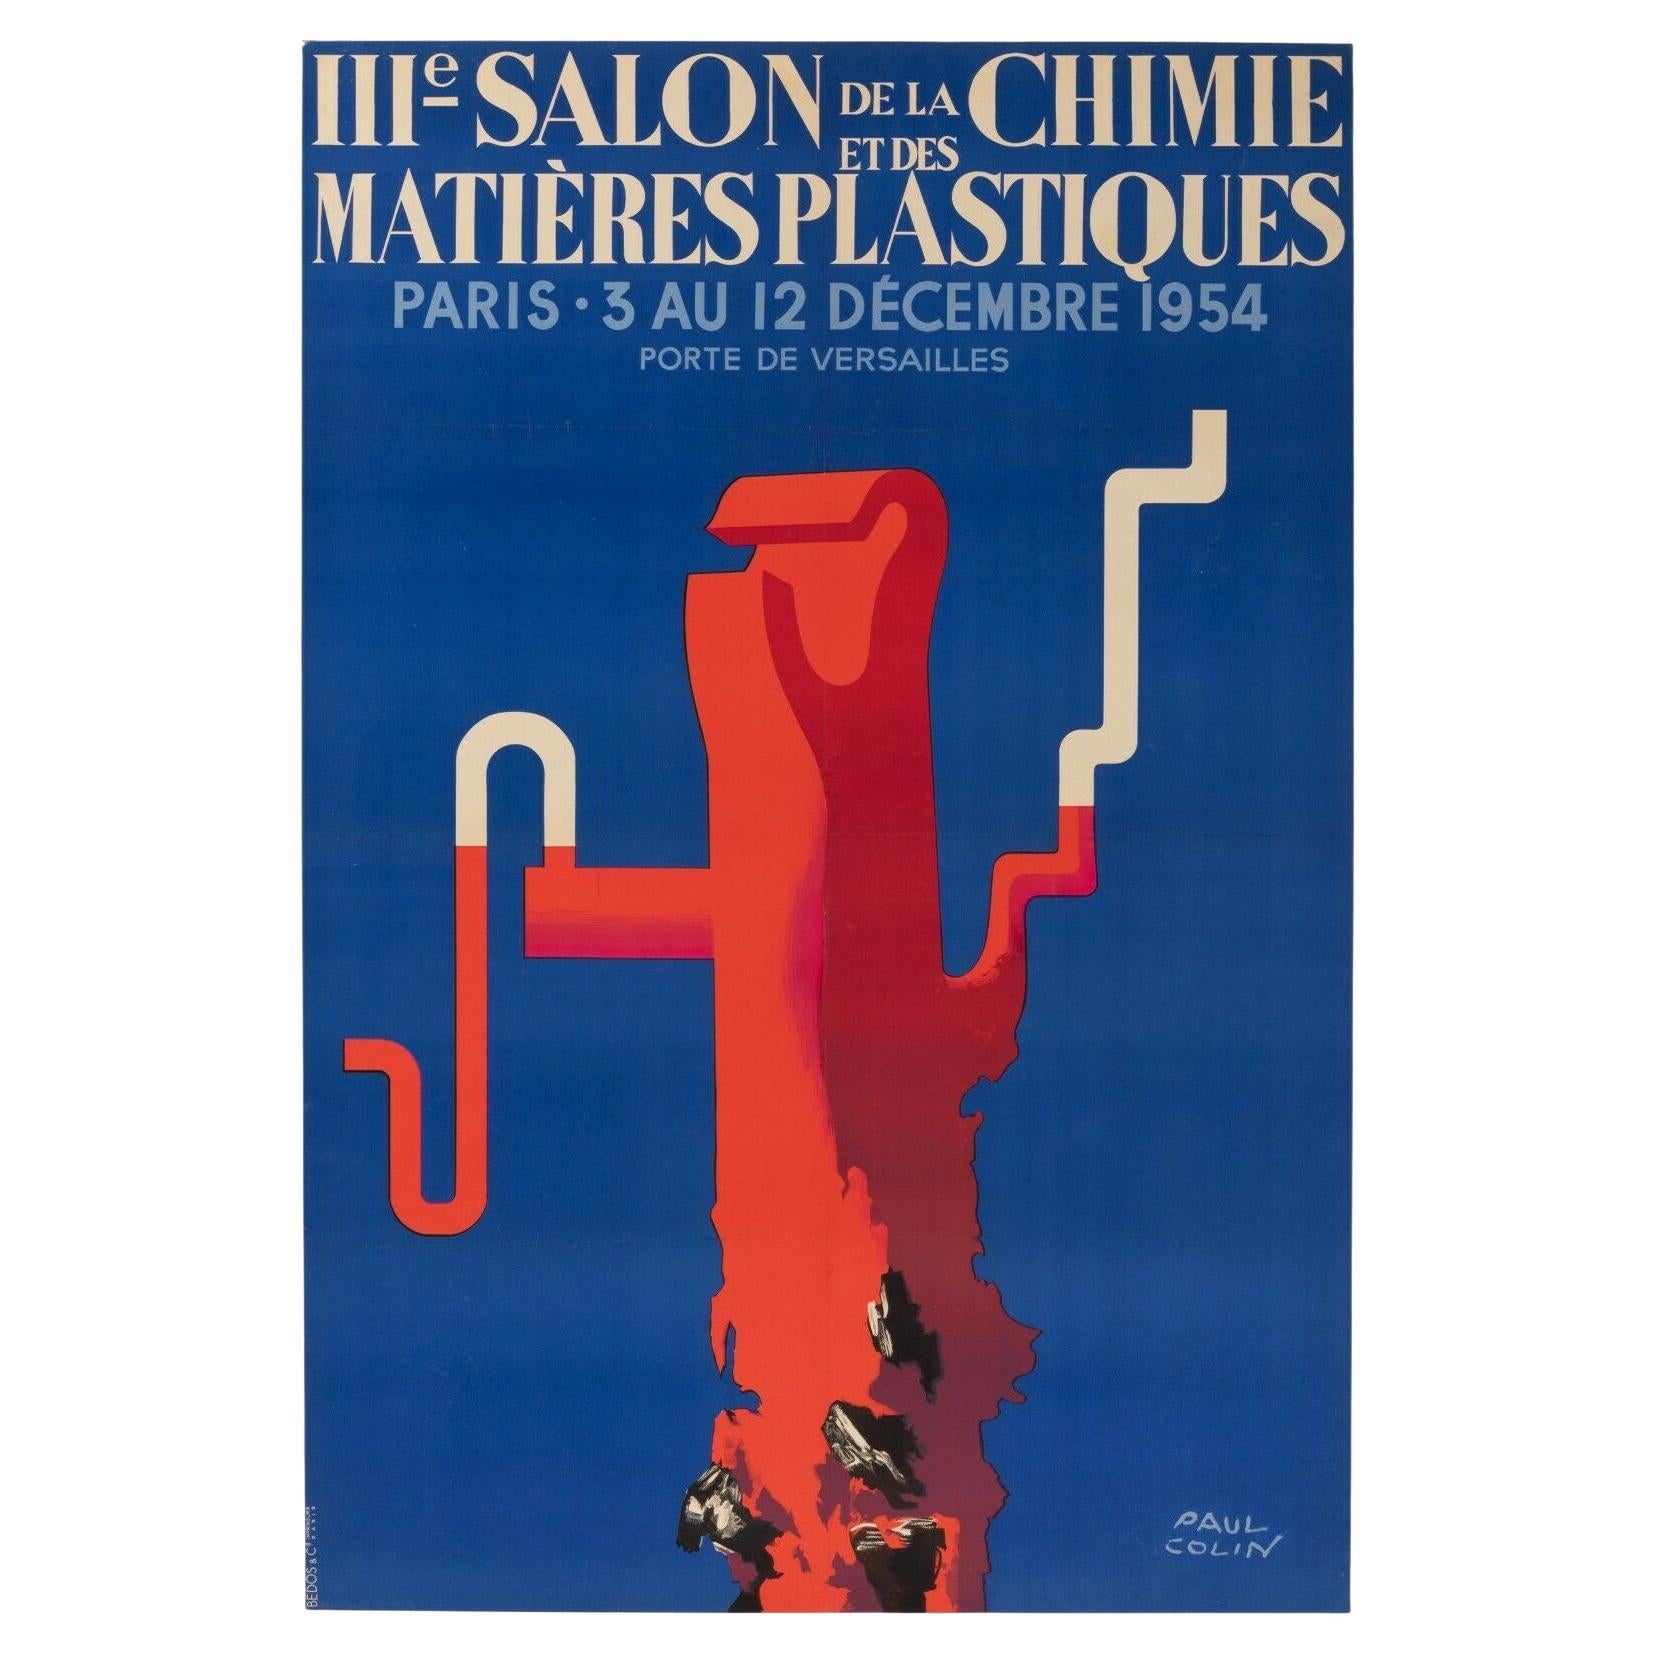 Original Poster-Paul Colin-Salon de la chimie et plastiques-Paris, 1954 For Sale